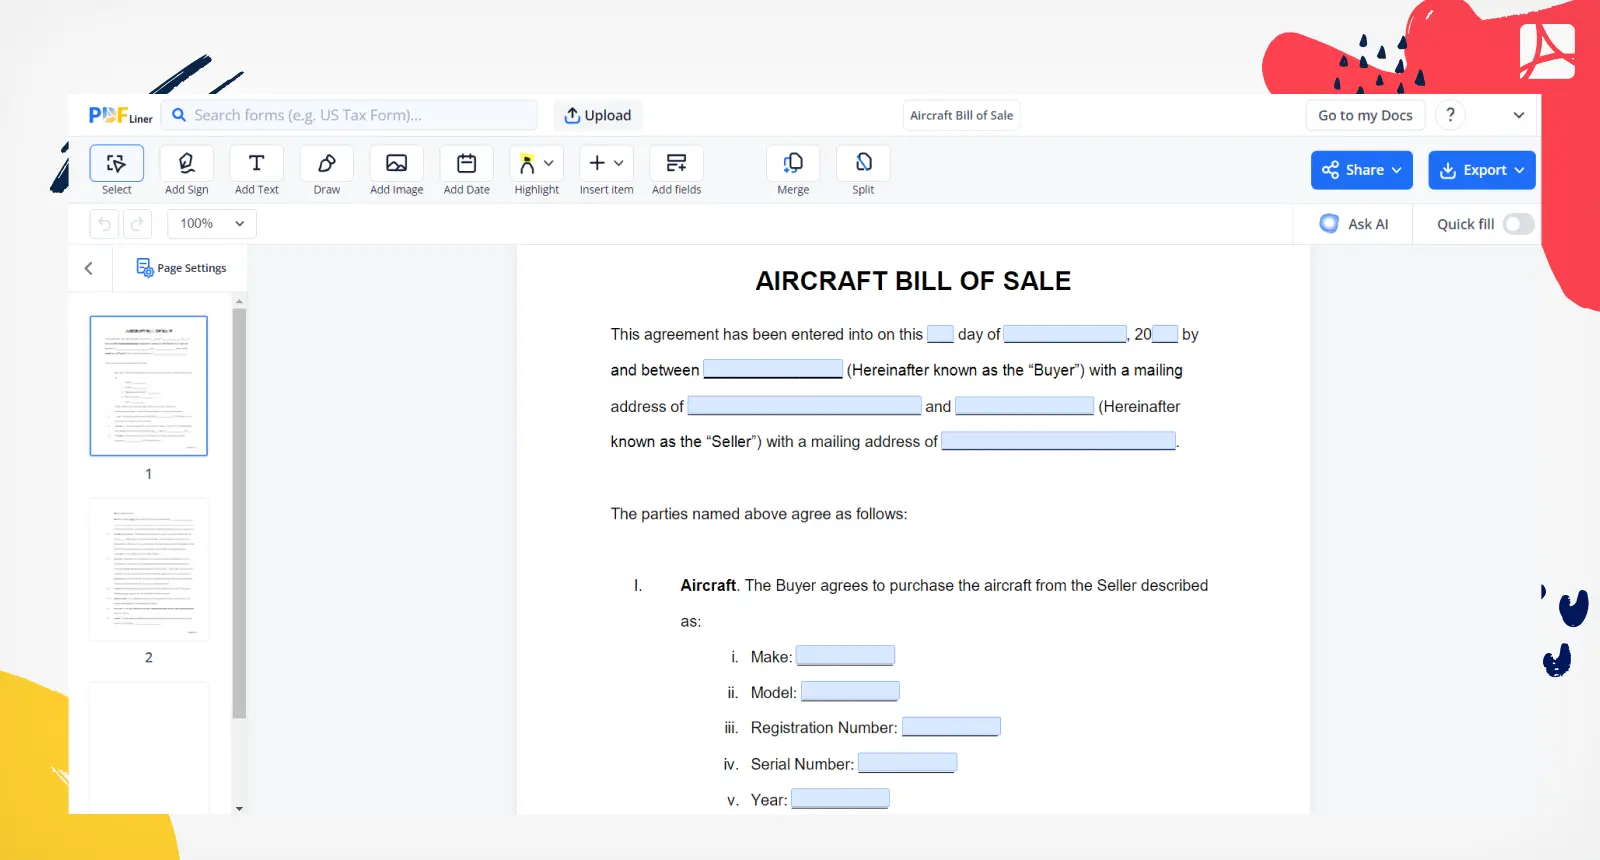 Aircraft Bill of Sale Screenshot